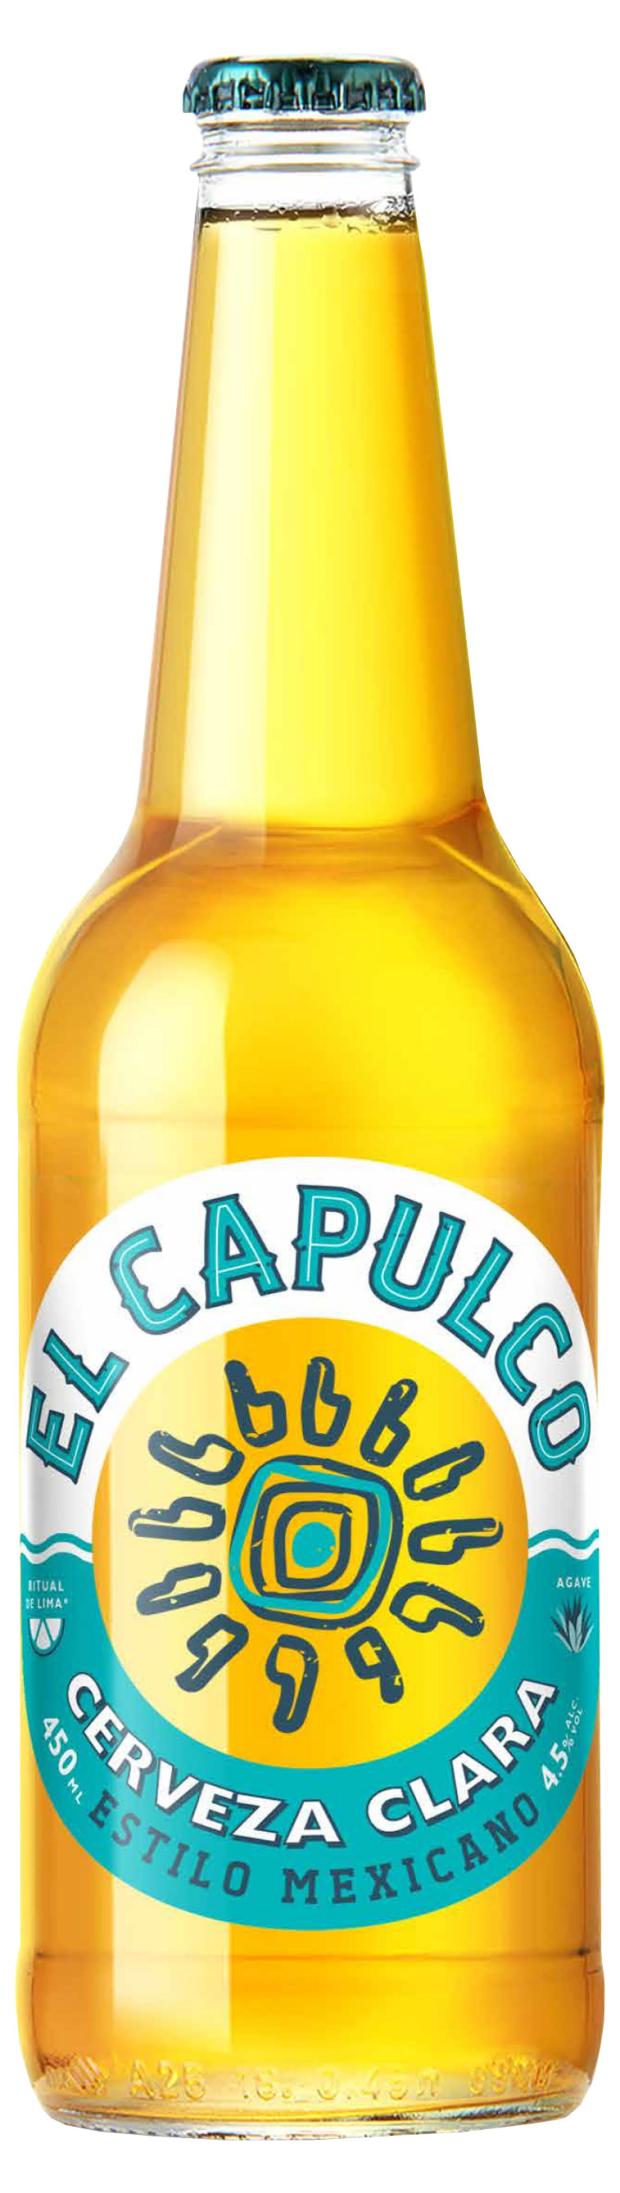 Пивной напиток Эль Капулько светлое 4,5% 0,4л сб